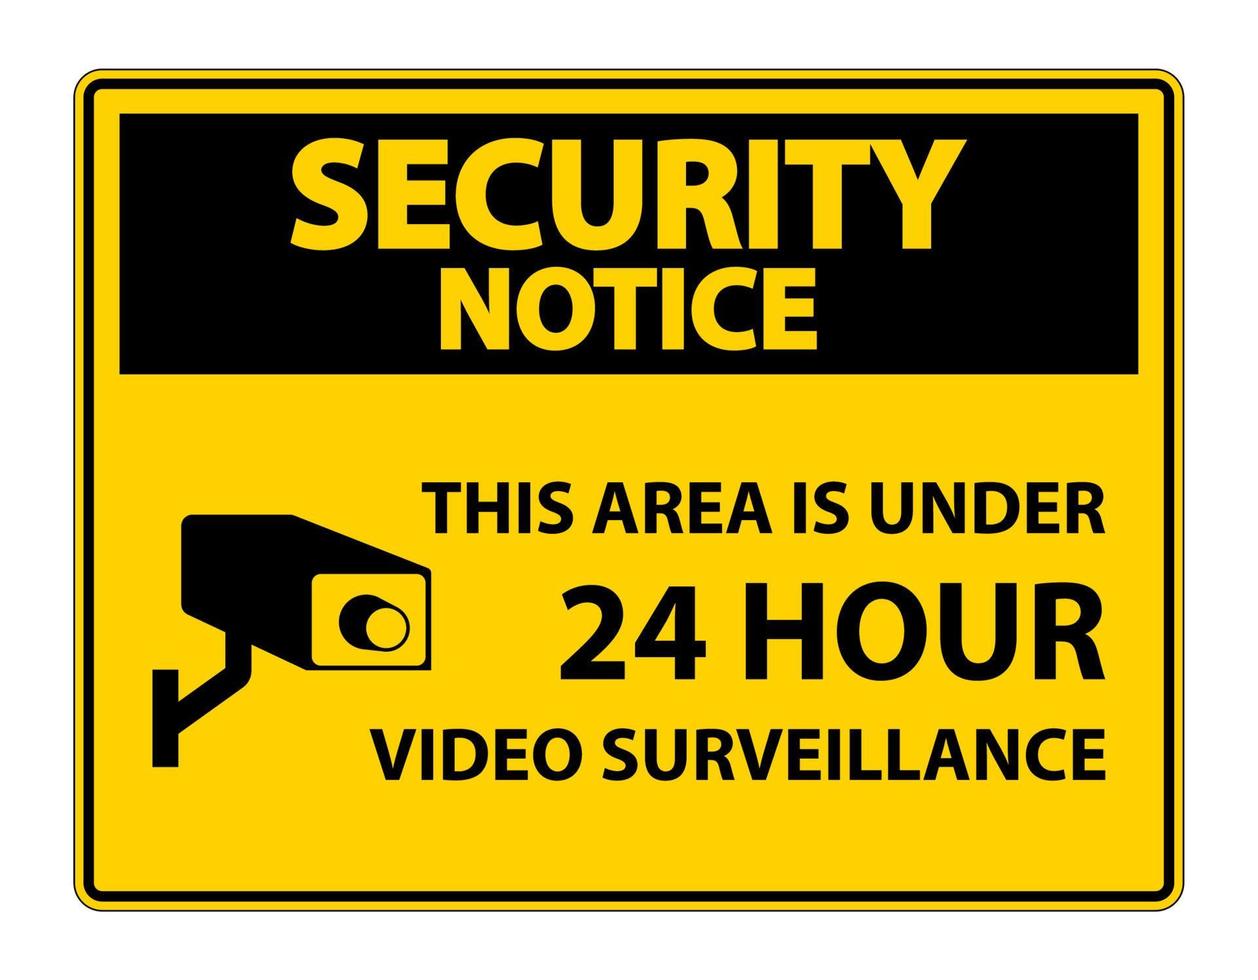 säkerhetsmeddelande detta område är under 24 timmars symbol för videoövervakningssymbol isolerad på vit bakgrund, vektorillustration vektor